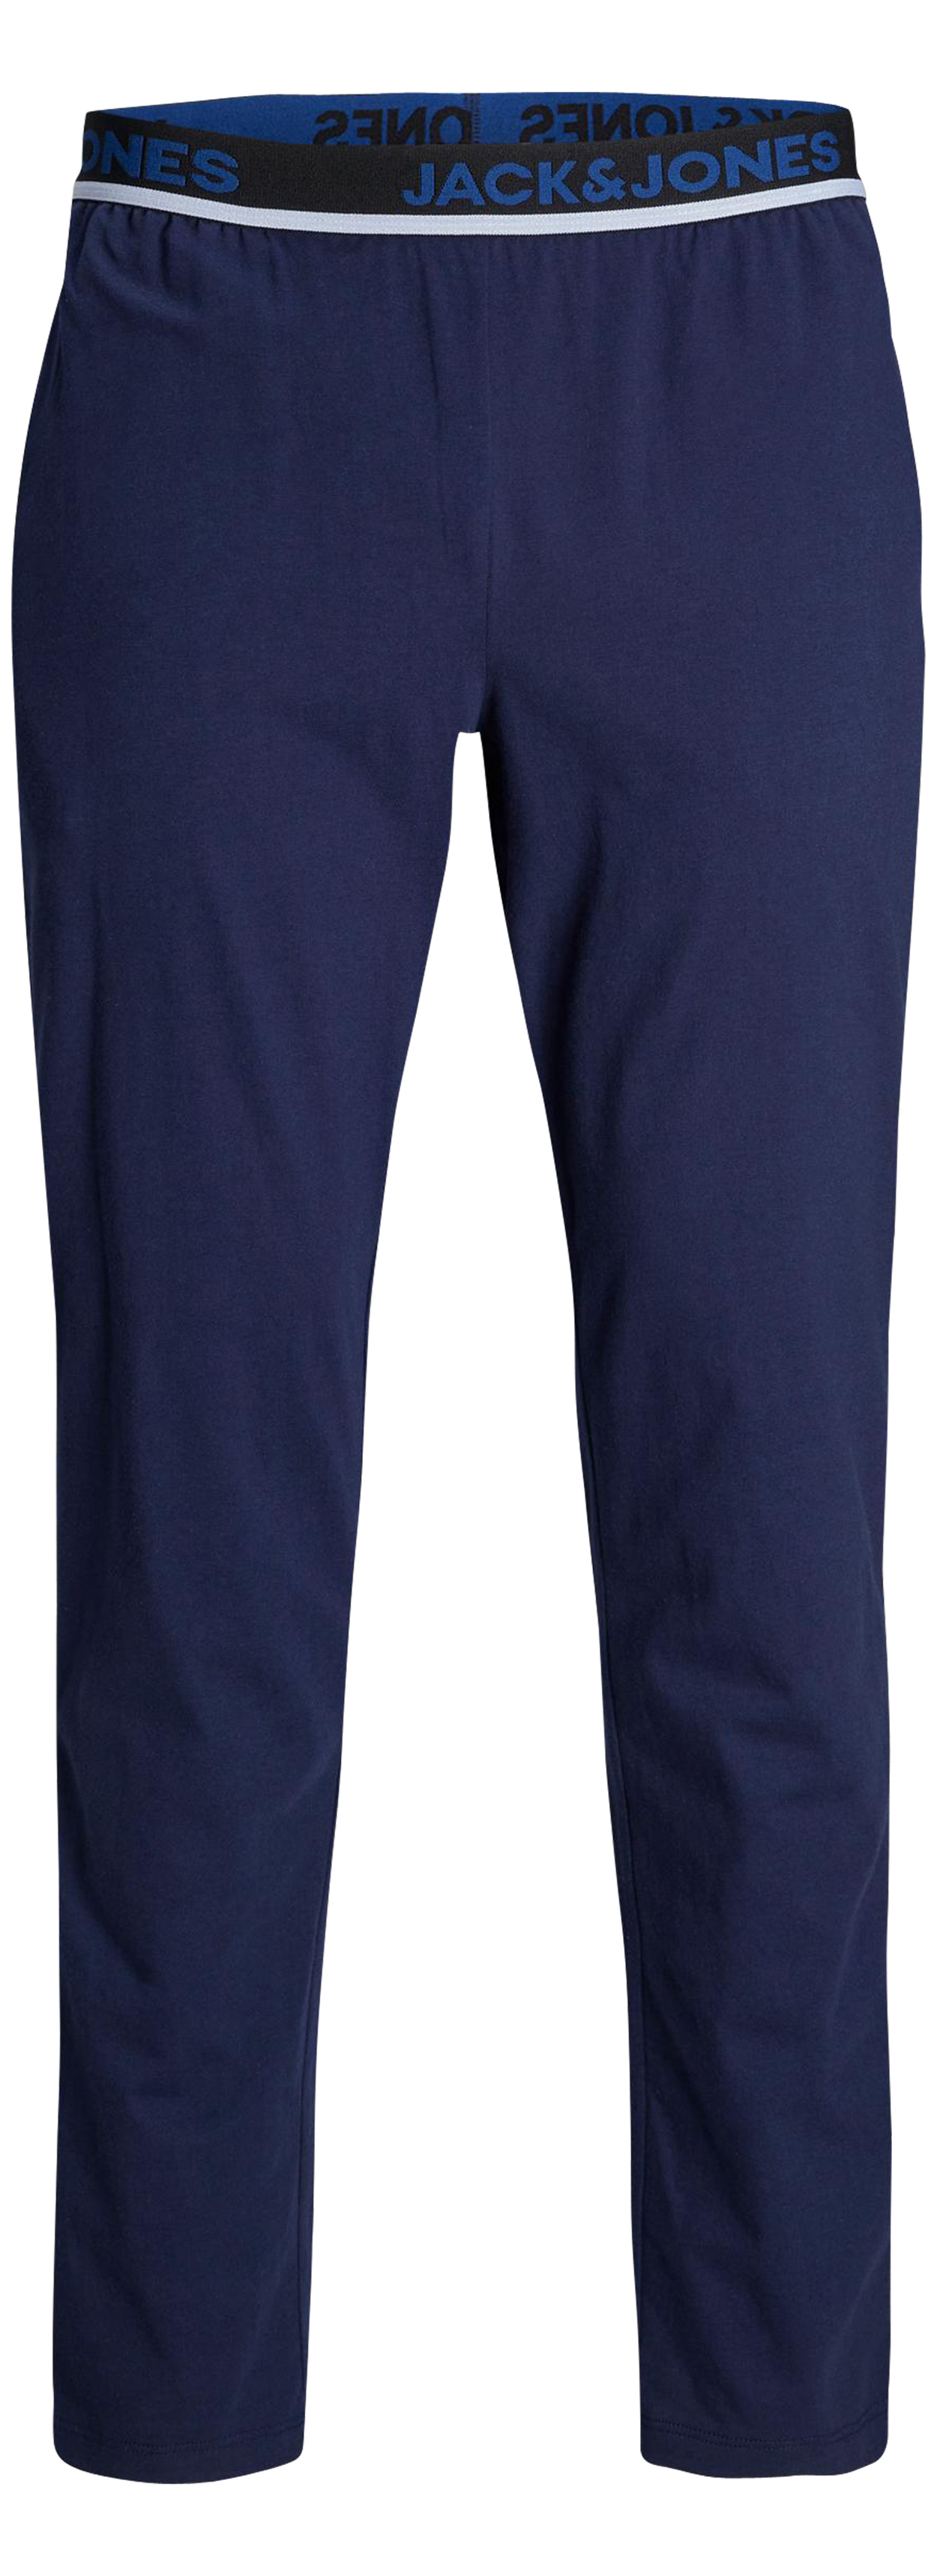 Pantalon de pyjama Jack & Jones bleu marine